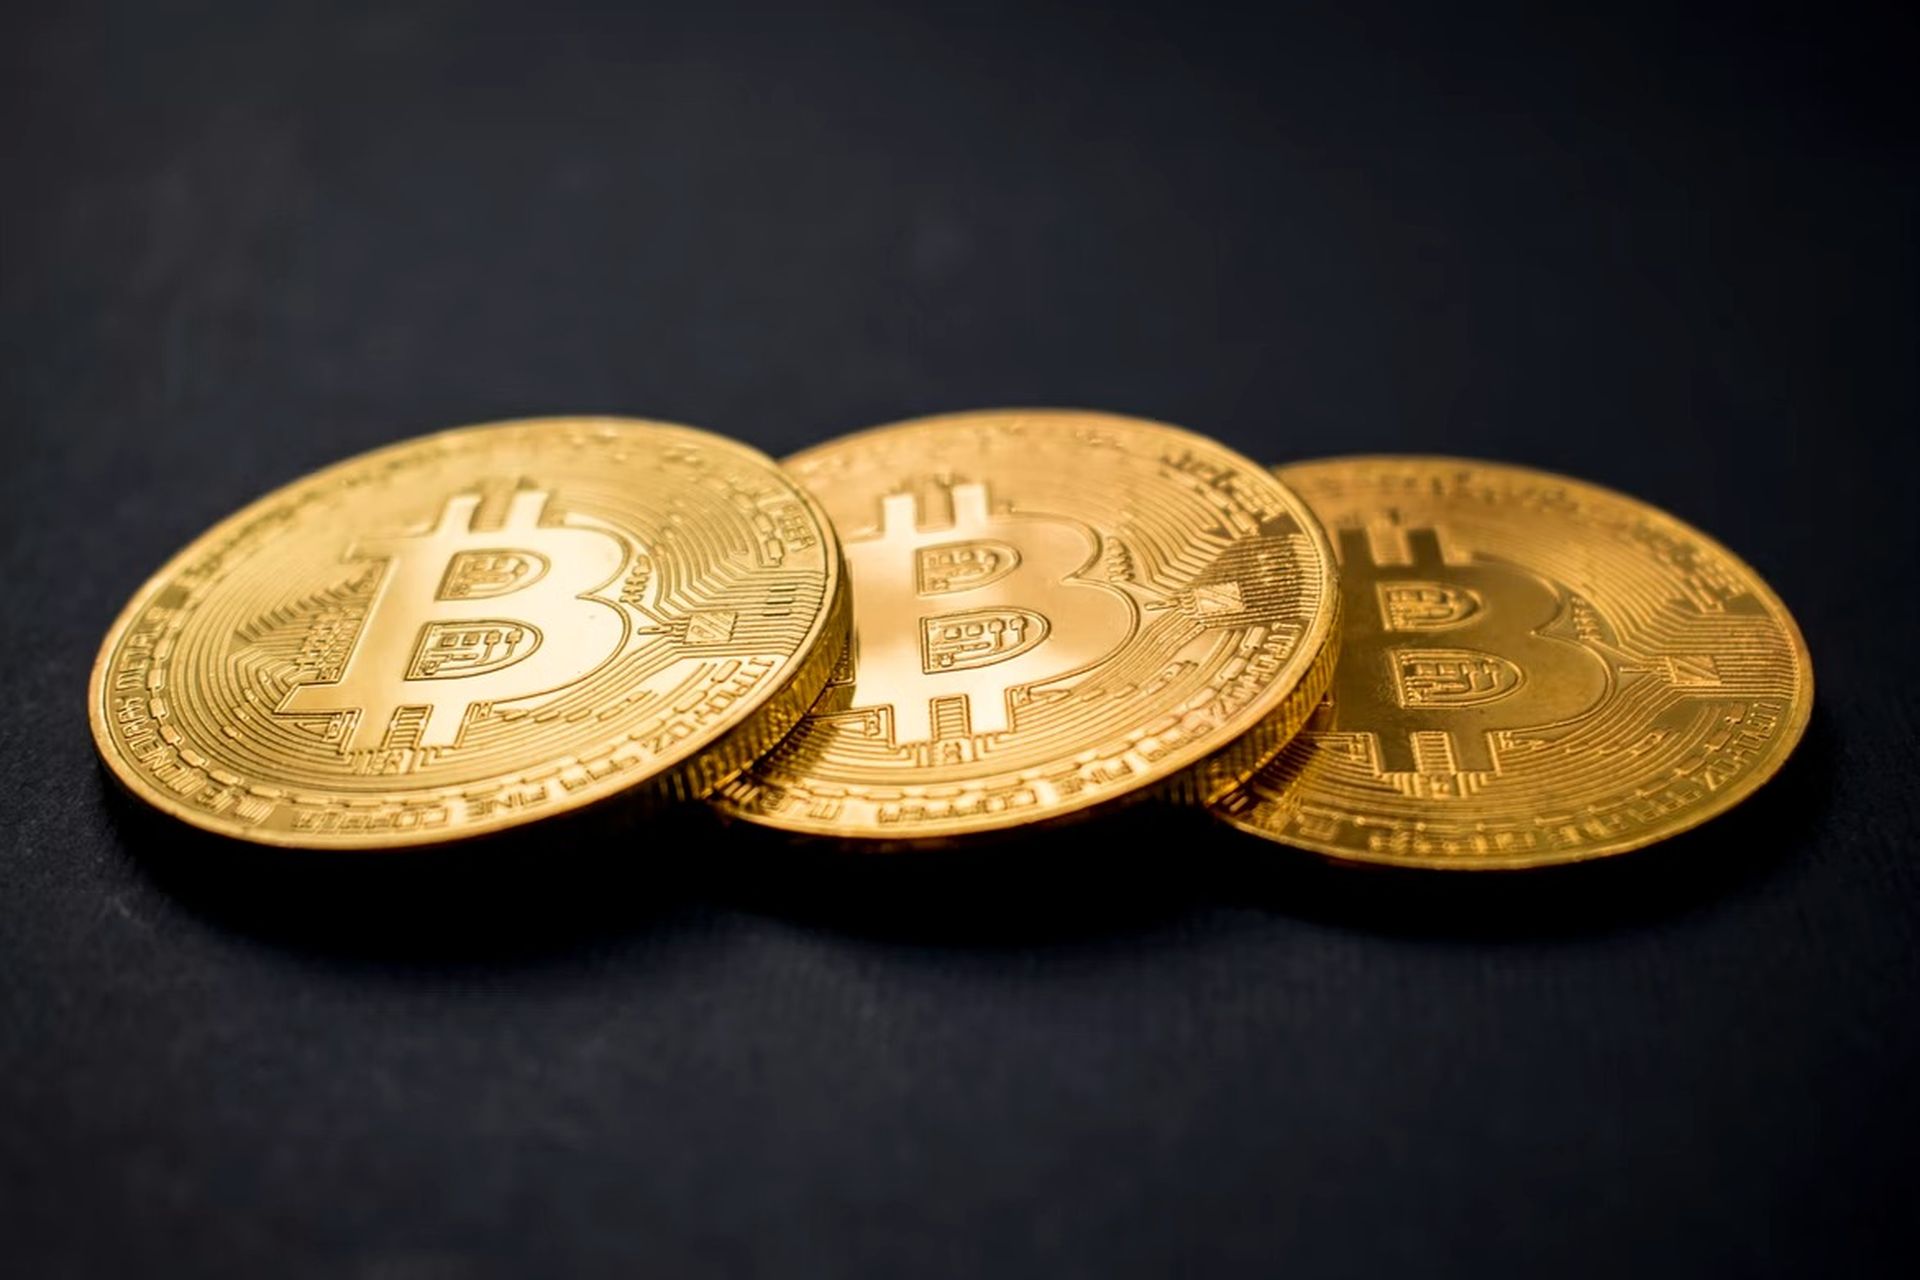 El Salvador bitcoin satın aldı: 19.000 dolar değerinde 80 Bitcoin aldı